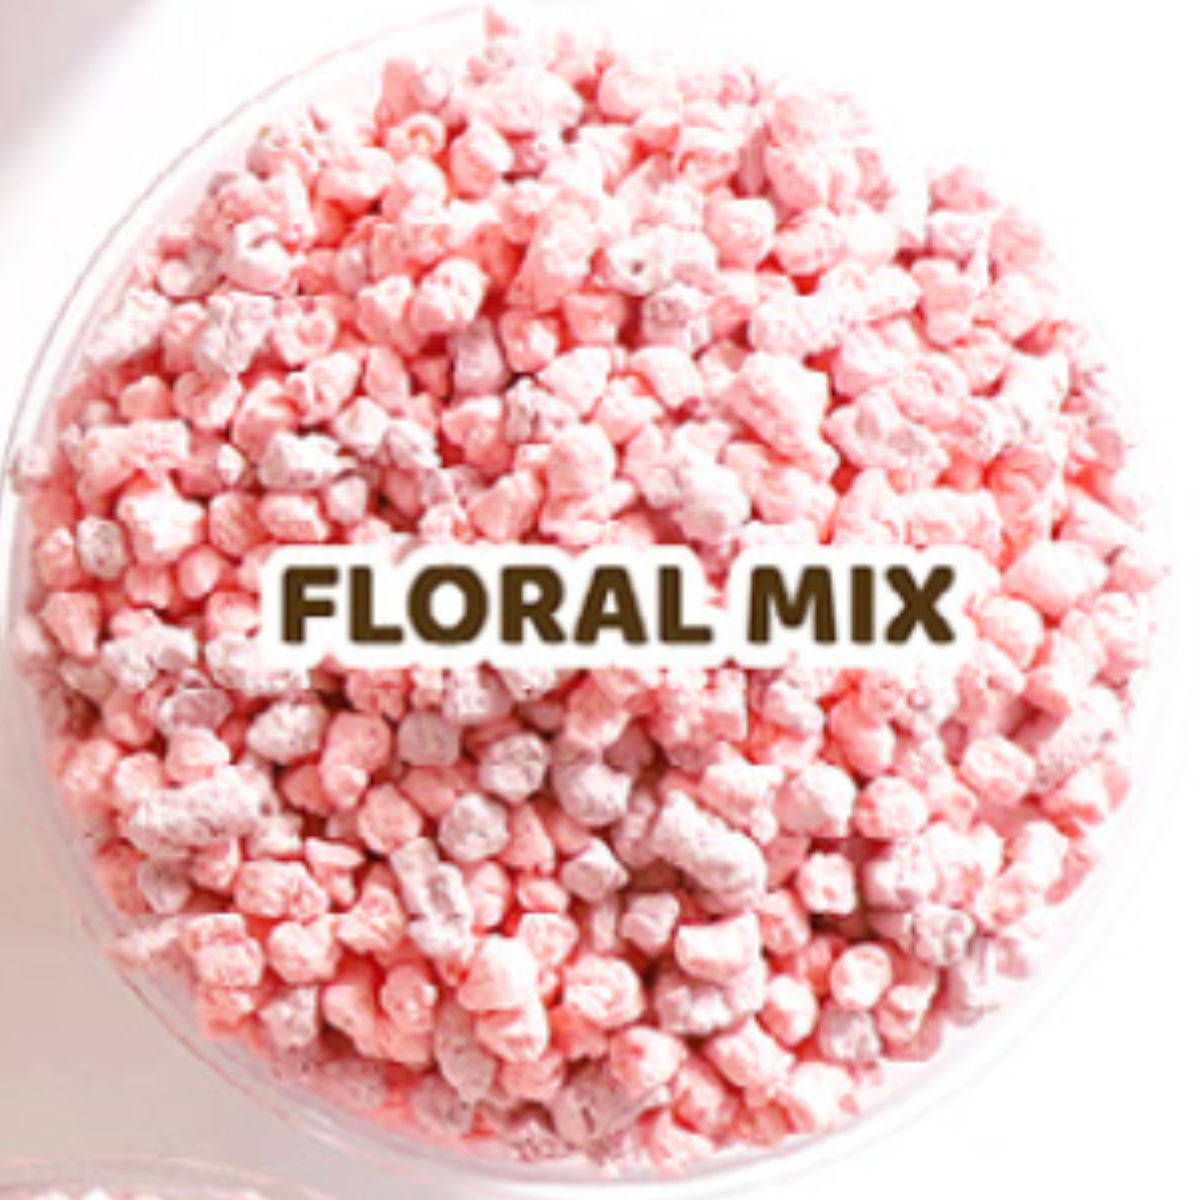 Kit Cat Snow Peas Cat Litter - Floral Mix (6968459722913)